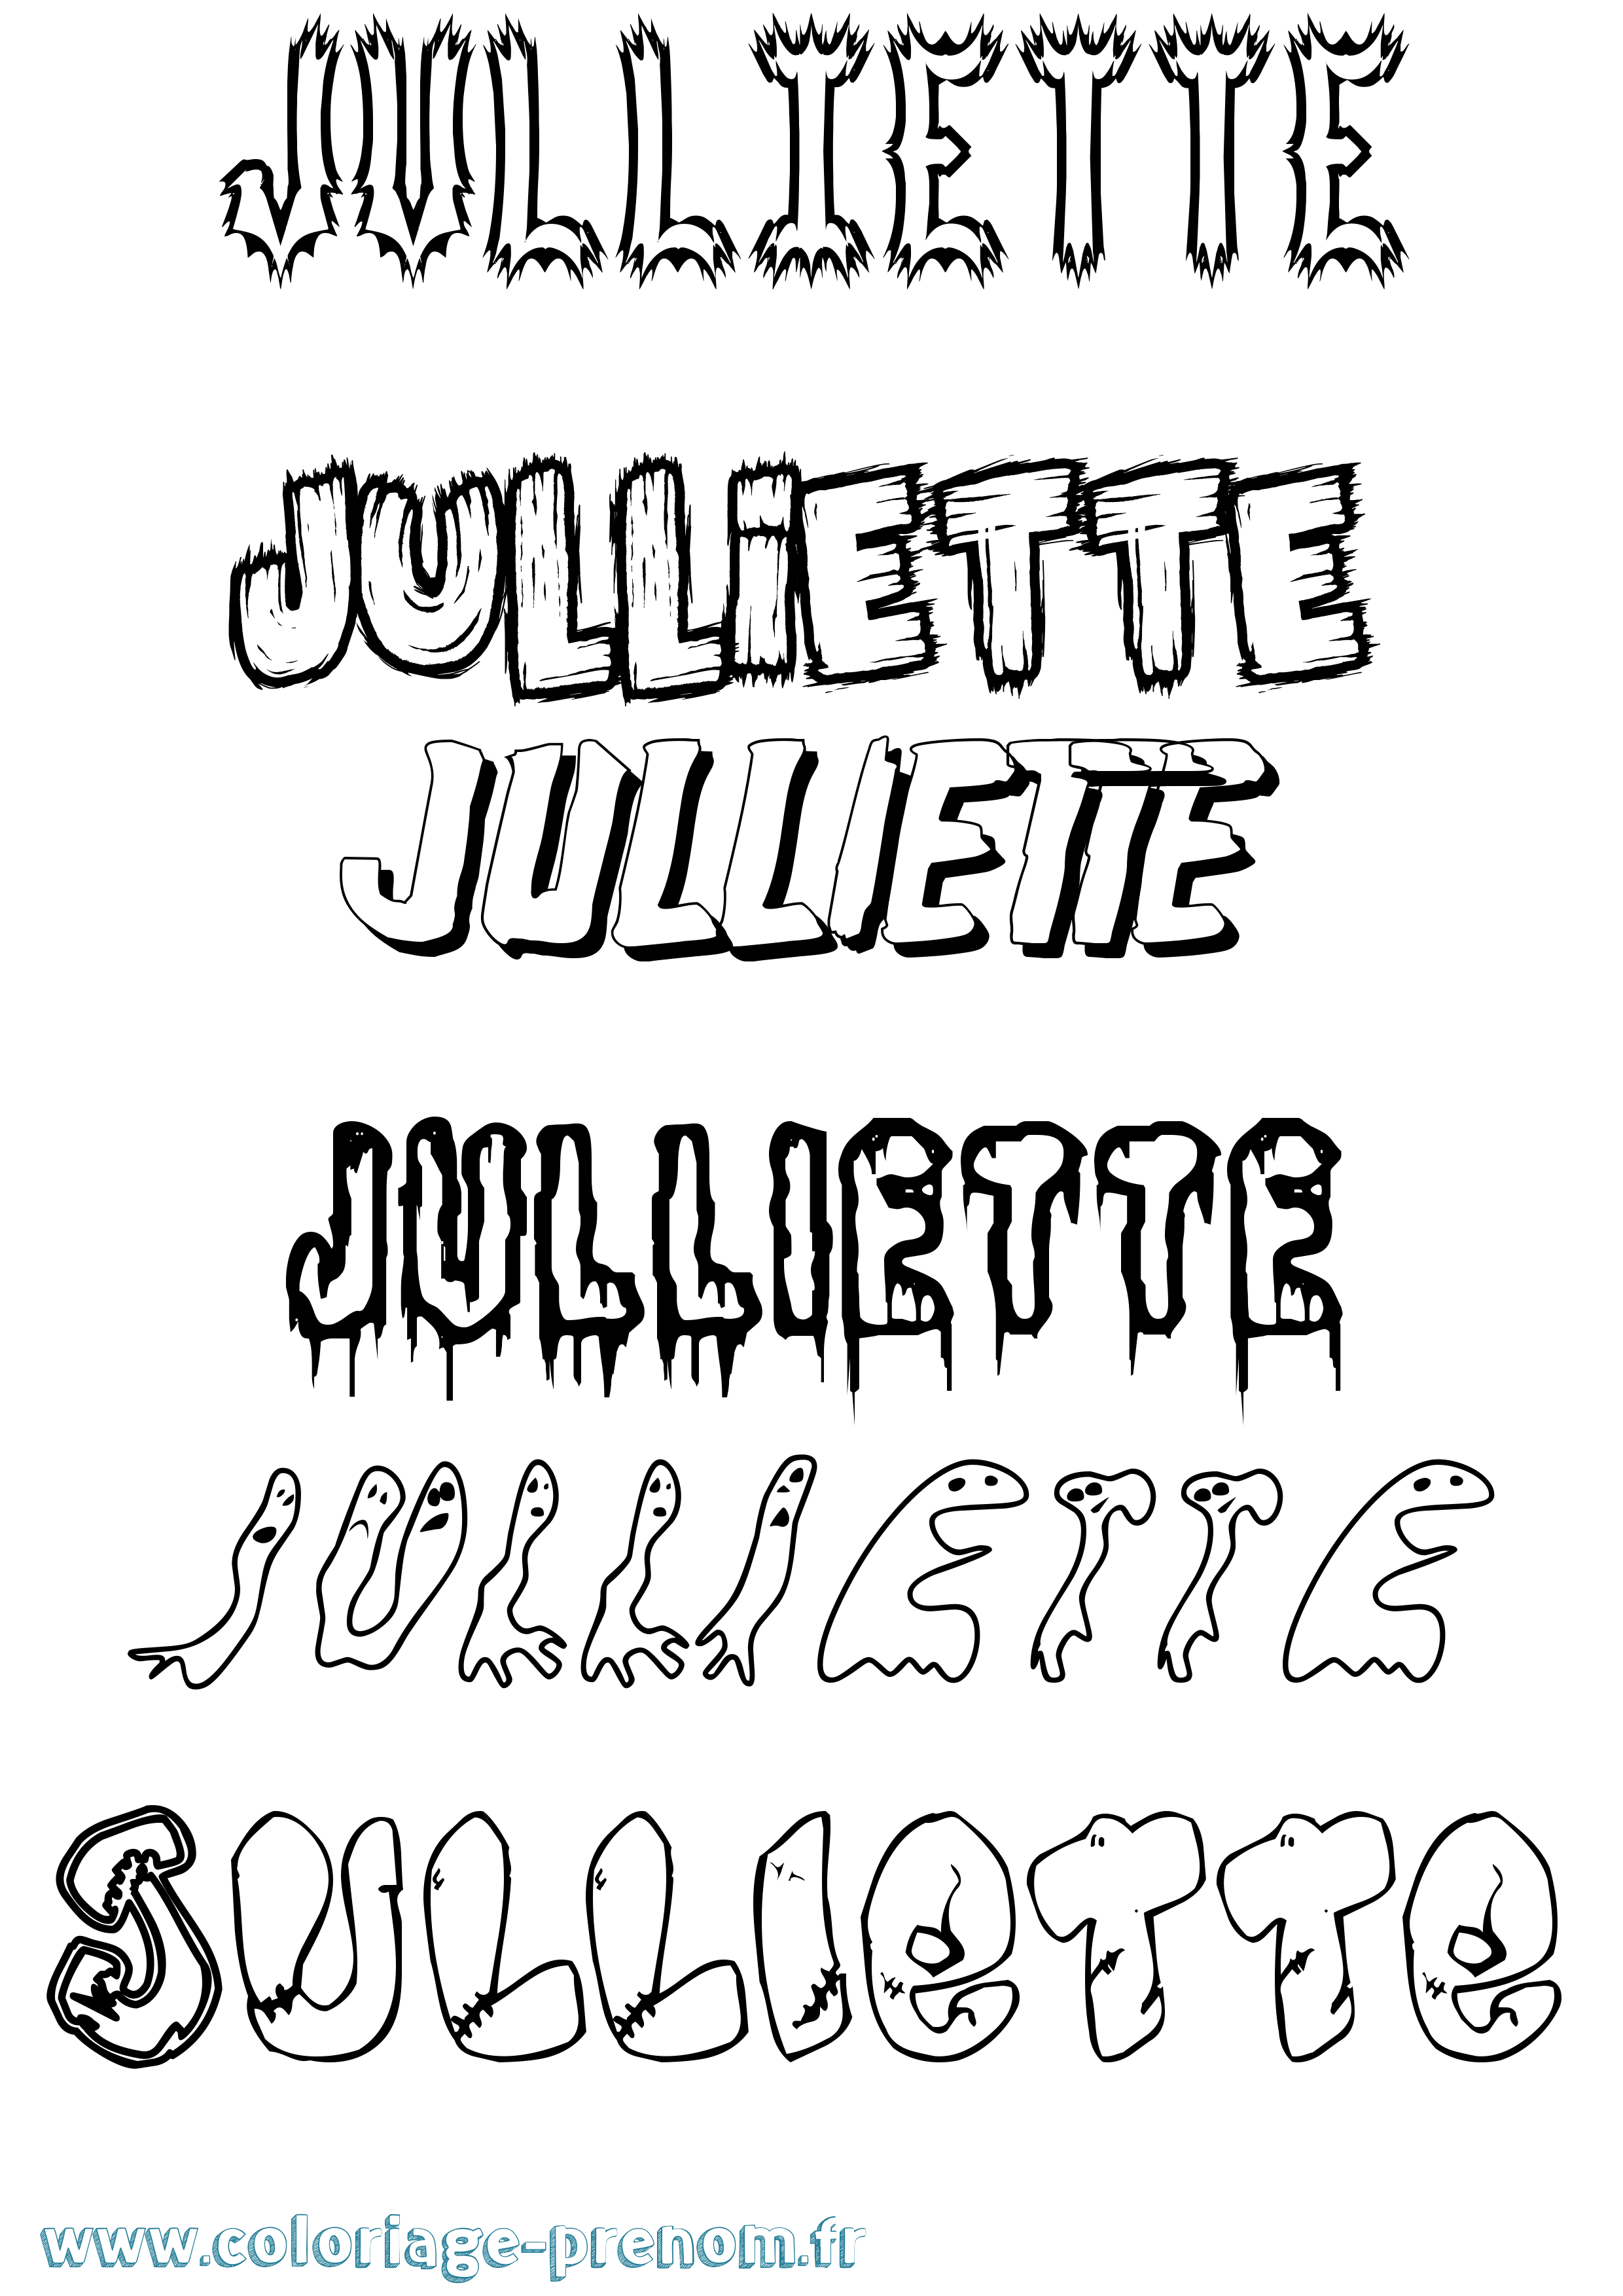 Coloriage prénom Julliette Frisson